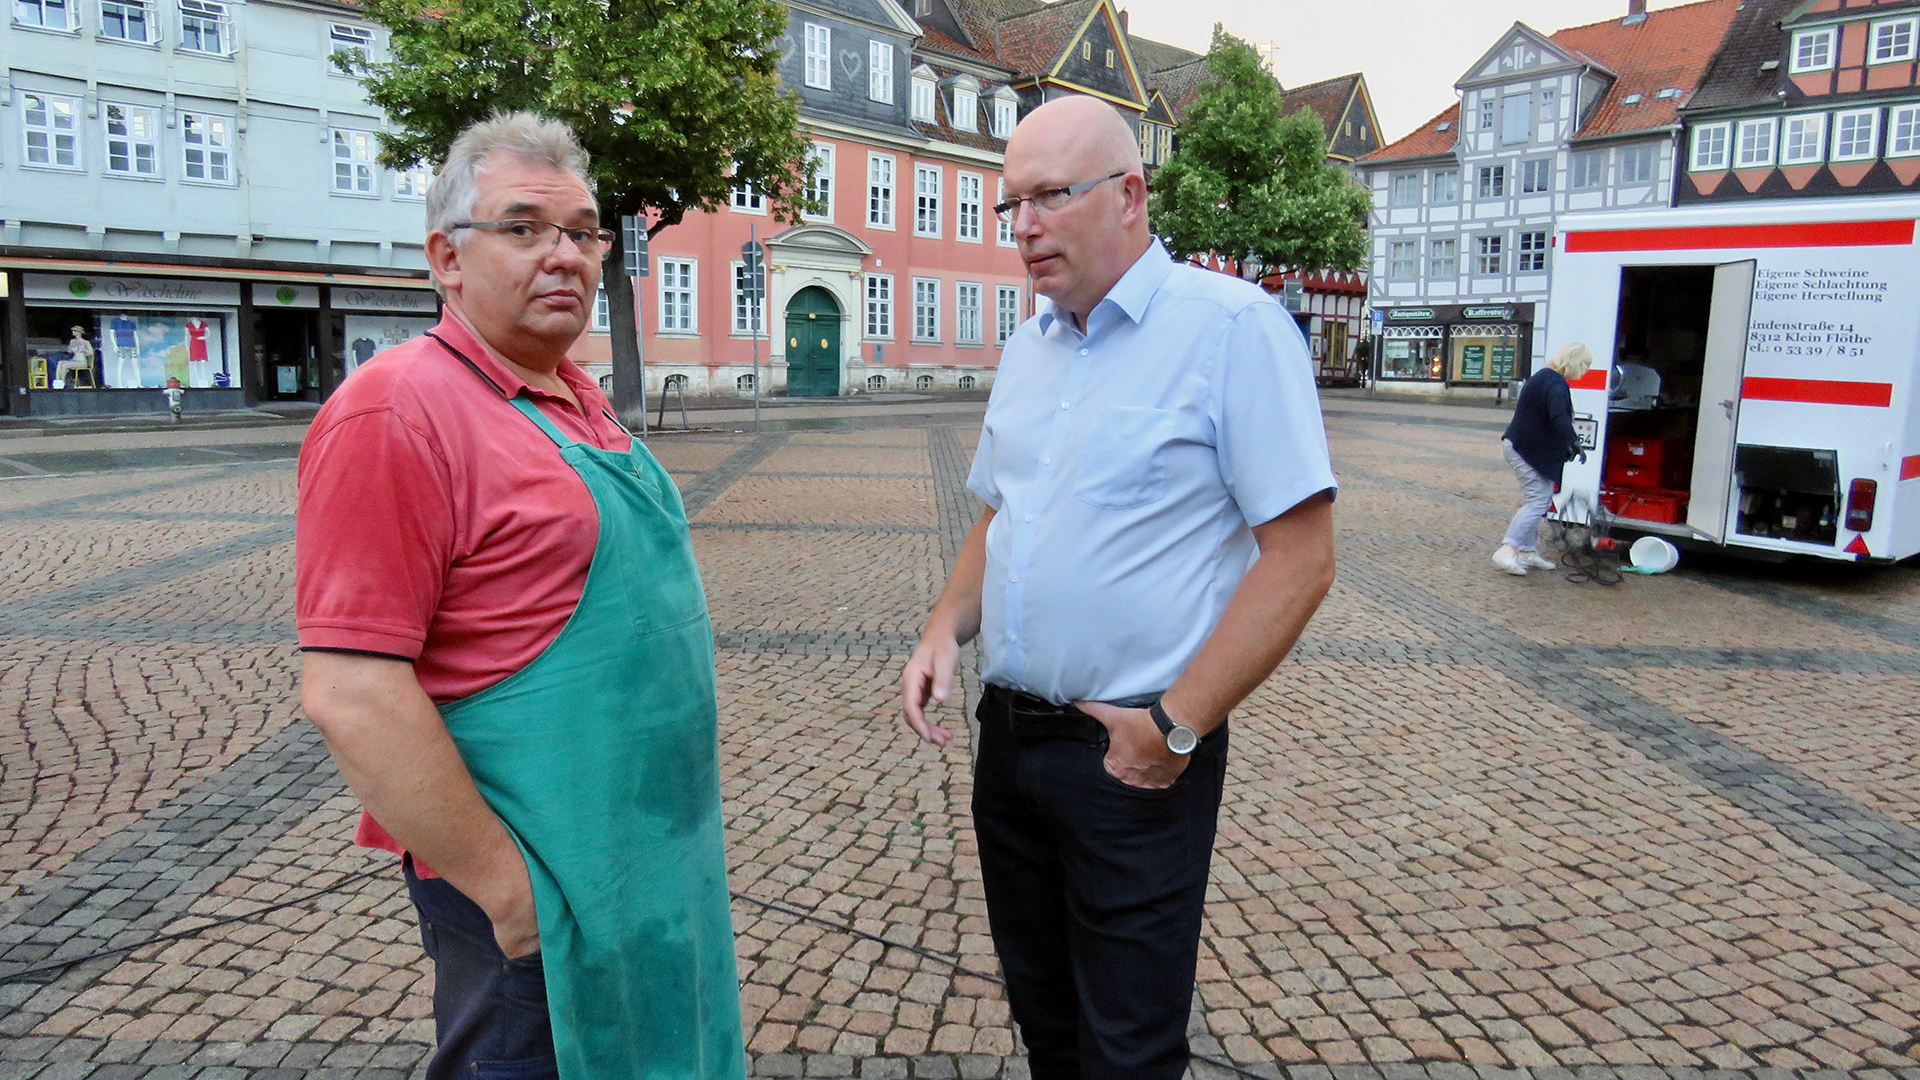 Zwei Männer stehen auf dem Marktplatz in Wolfenbüttel. Der Mann links im Bild trägt eine grüne Schürze.